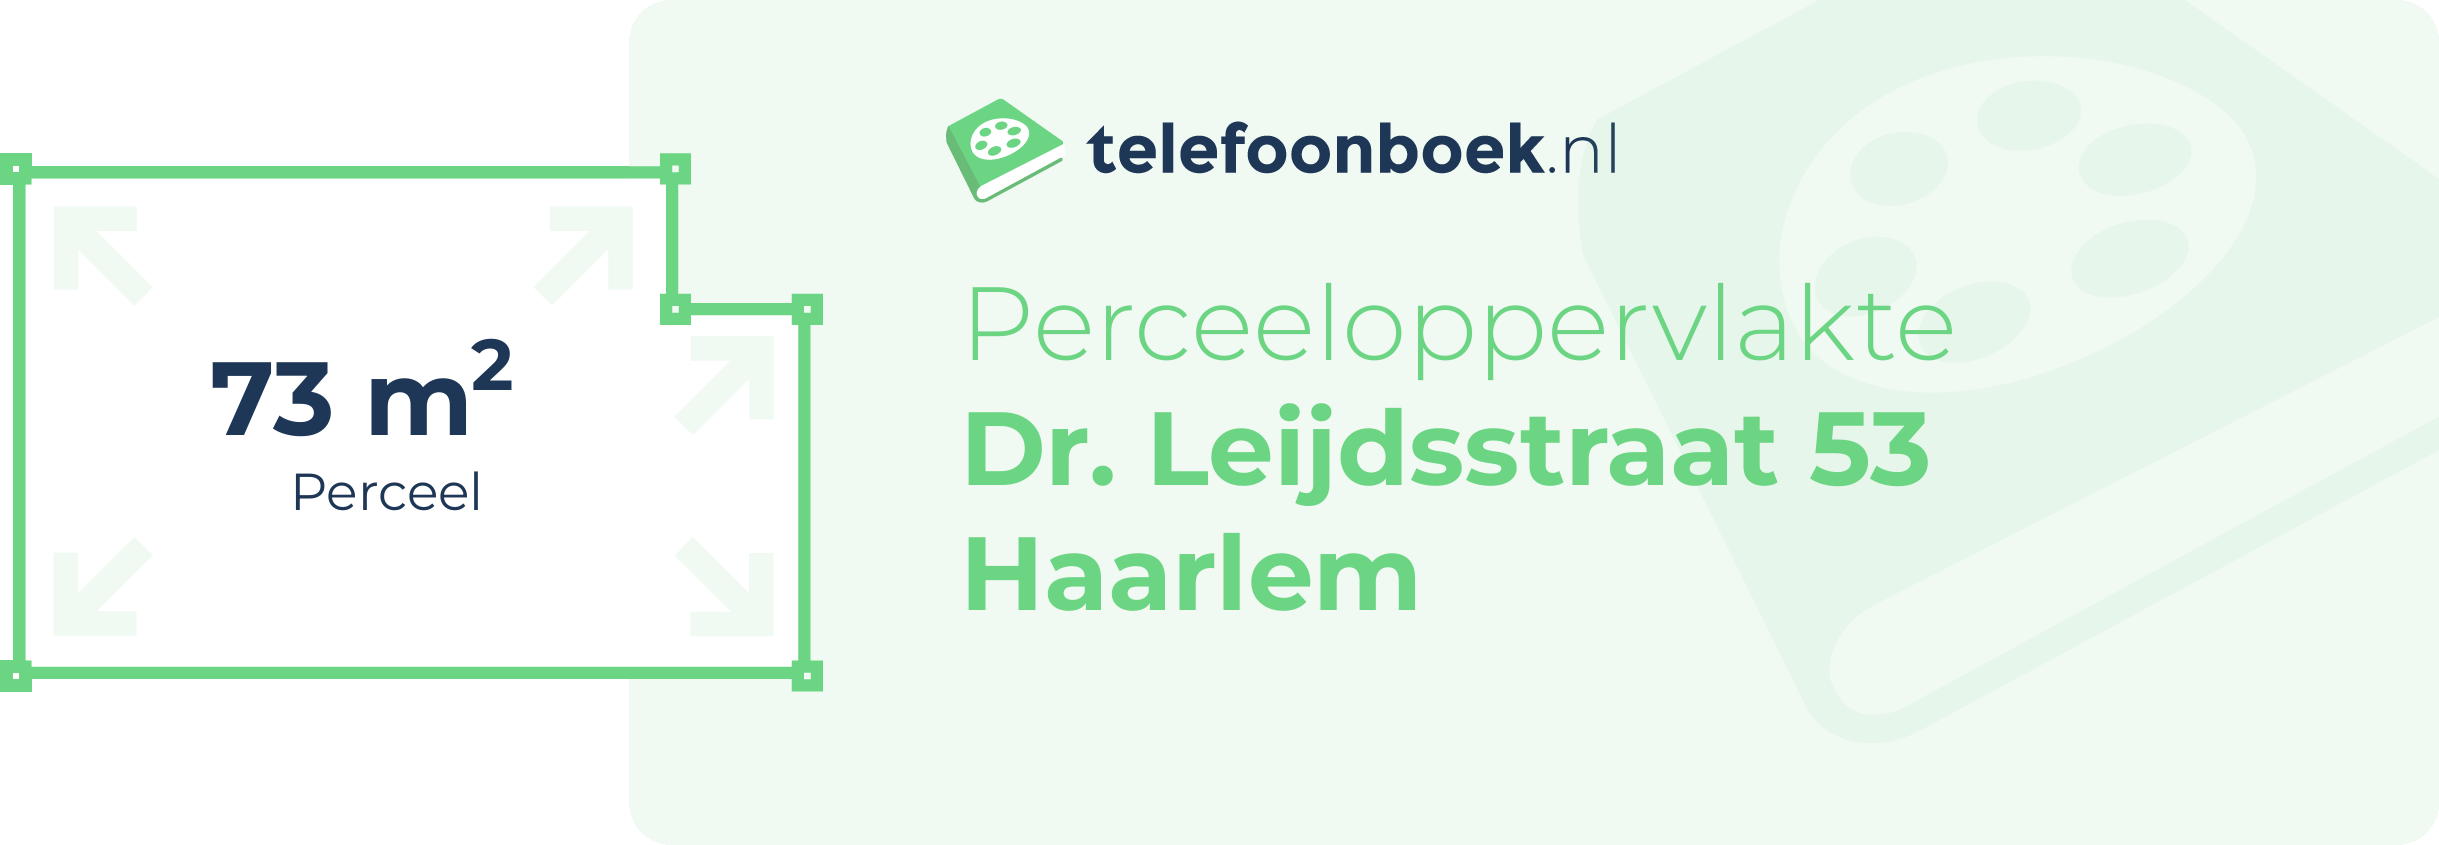 Perceeloppervlakte Dr. Leijdsstraat 53 Haarlem